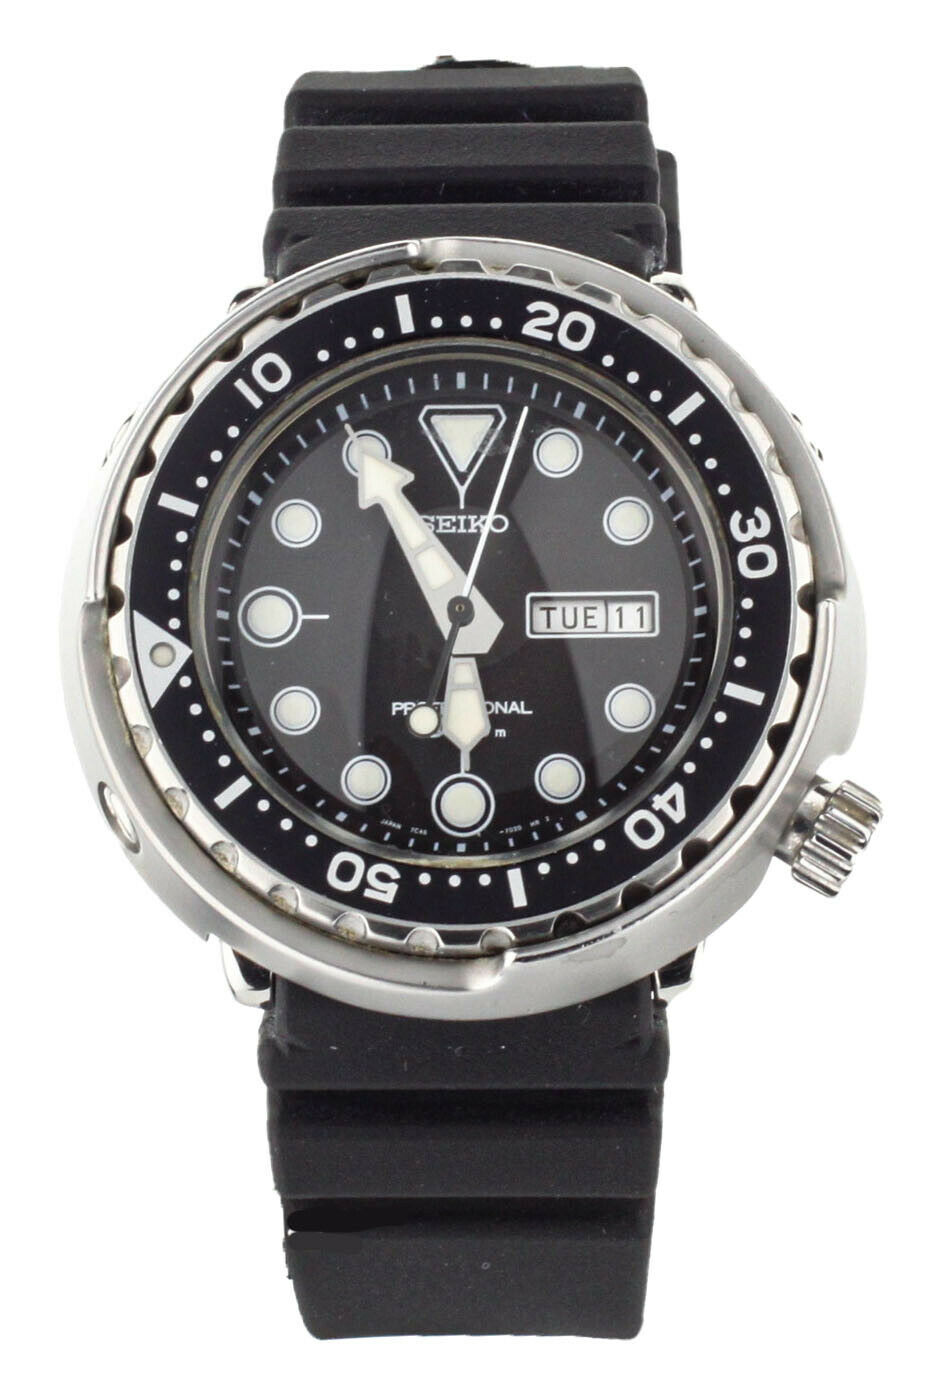 Seiko Tuna 300m Diver (SBBN007) Market Price | WatchCharts